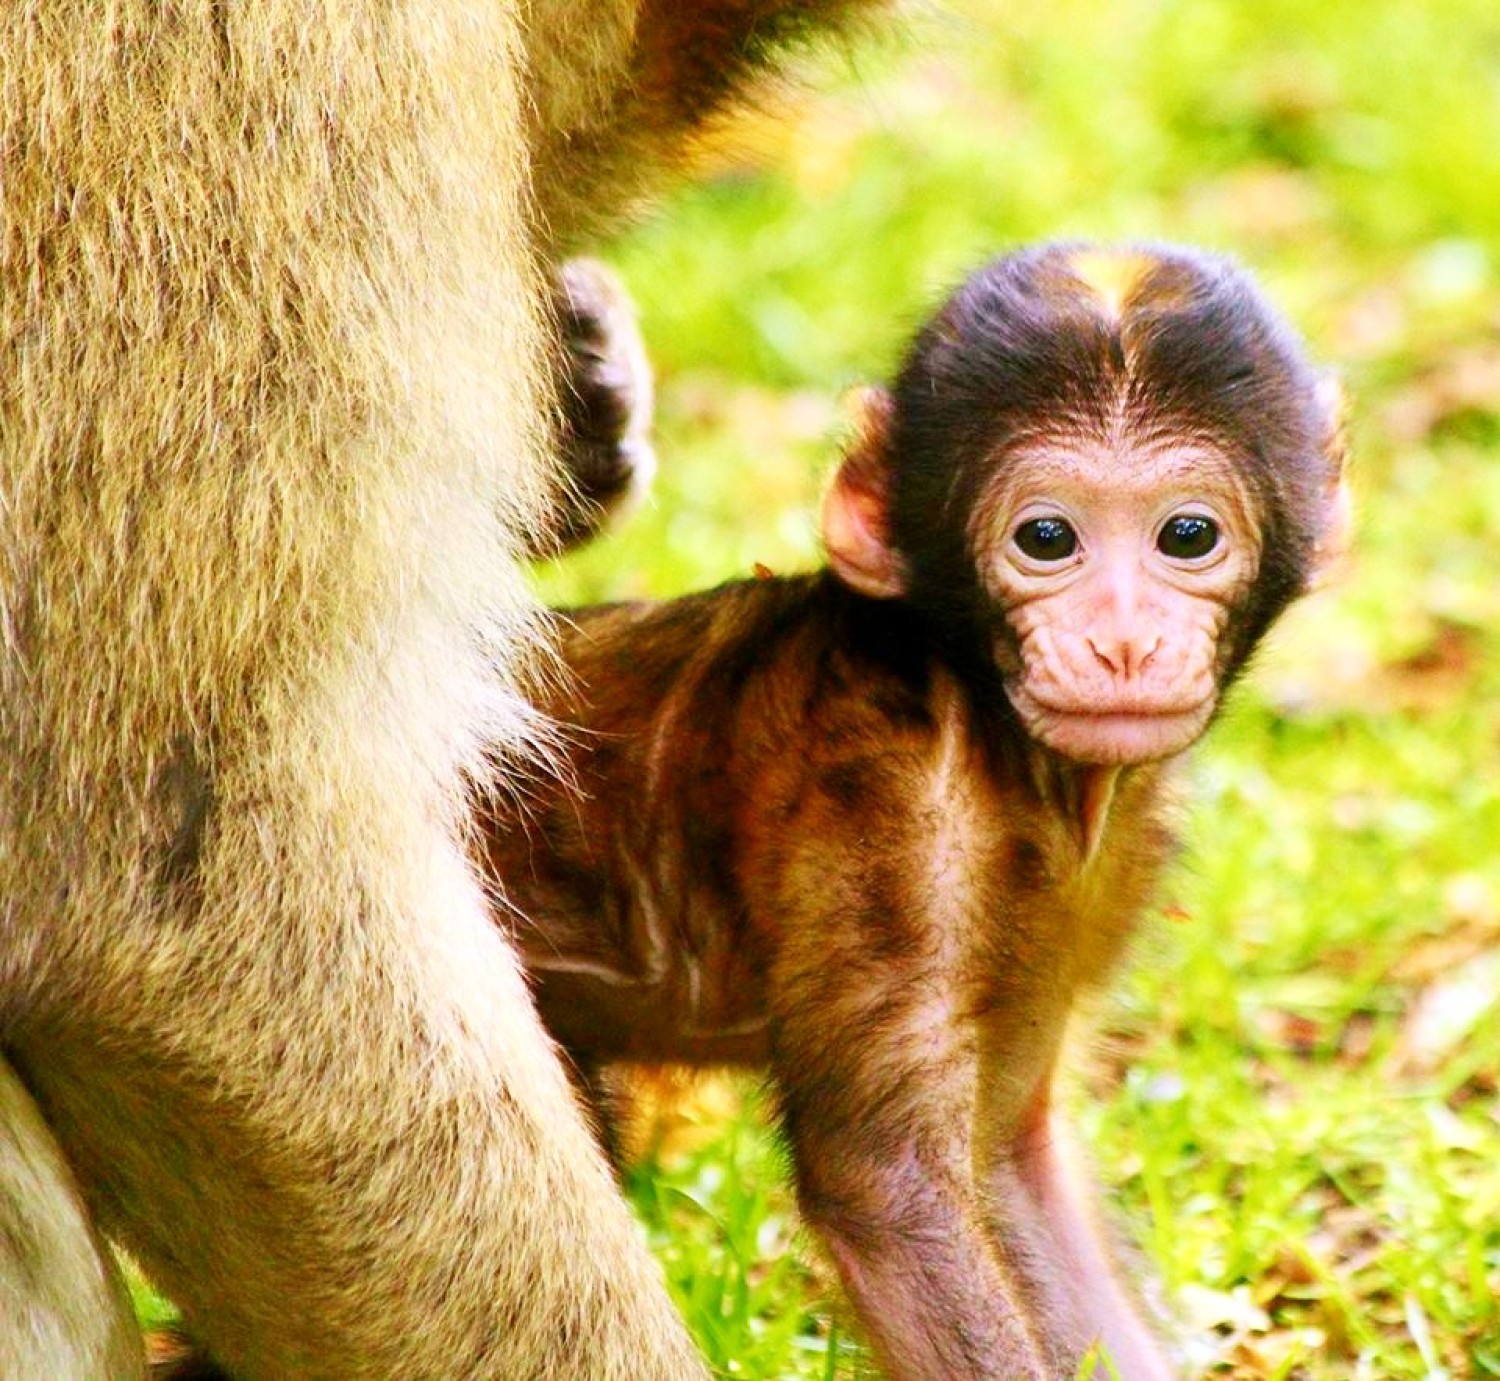 <img src="baby.jpg" alt="baby monkey at trentham staffordshire"/> 